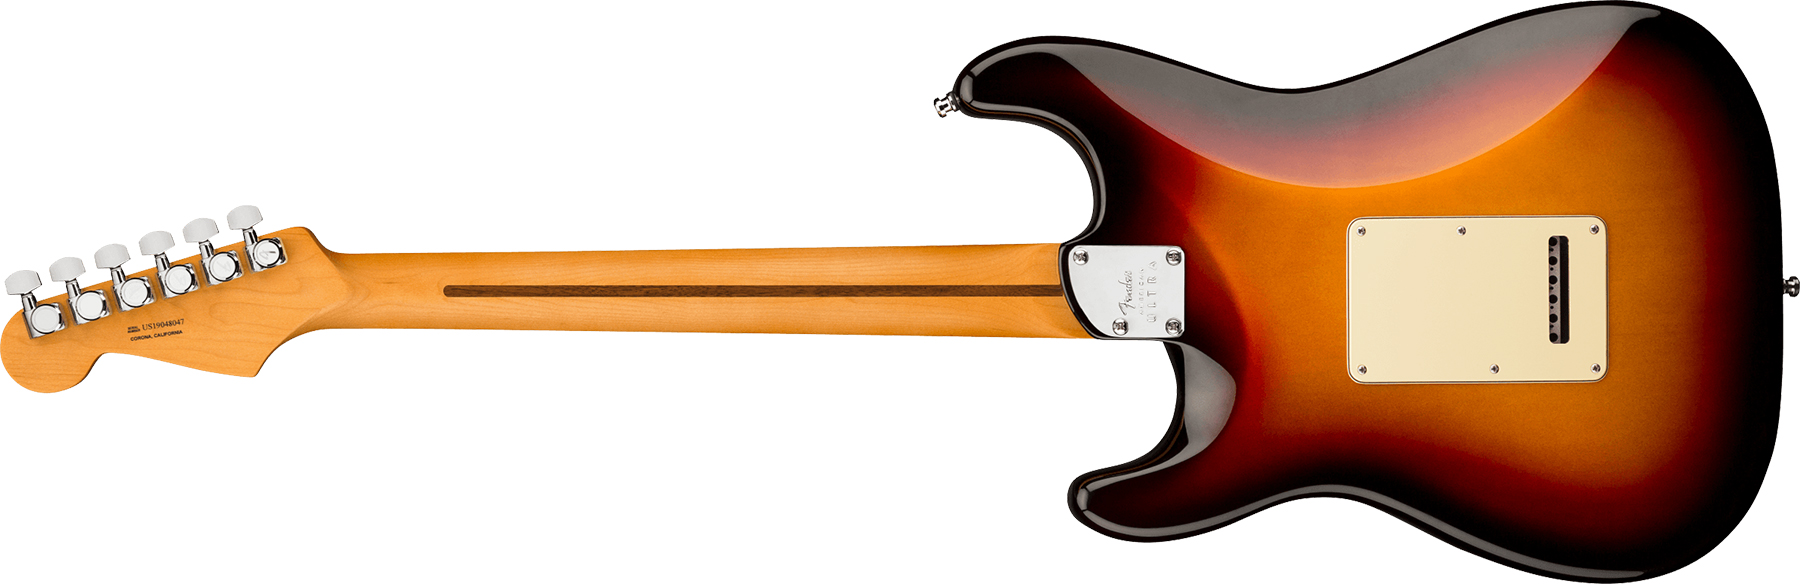 Fender Strat American Ultra 2019 Usa Rw - Ultraburst - Guitarra eléctrica con forma de str. - Variation 1